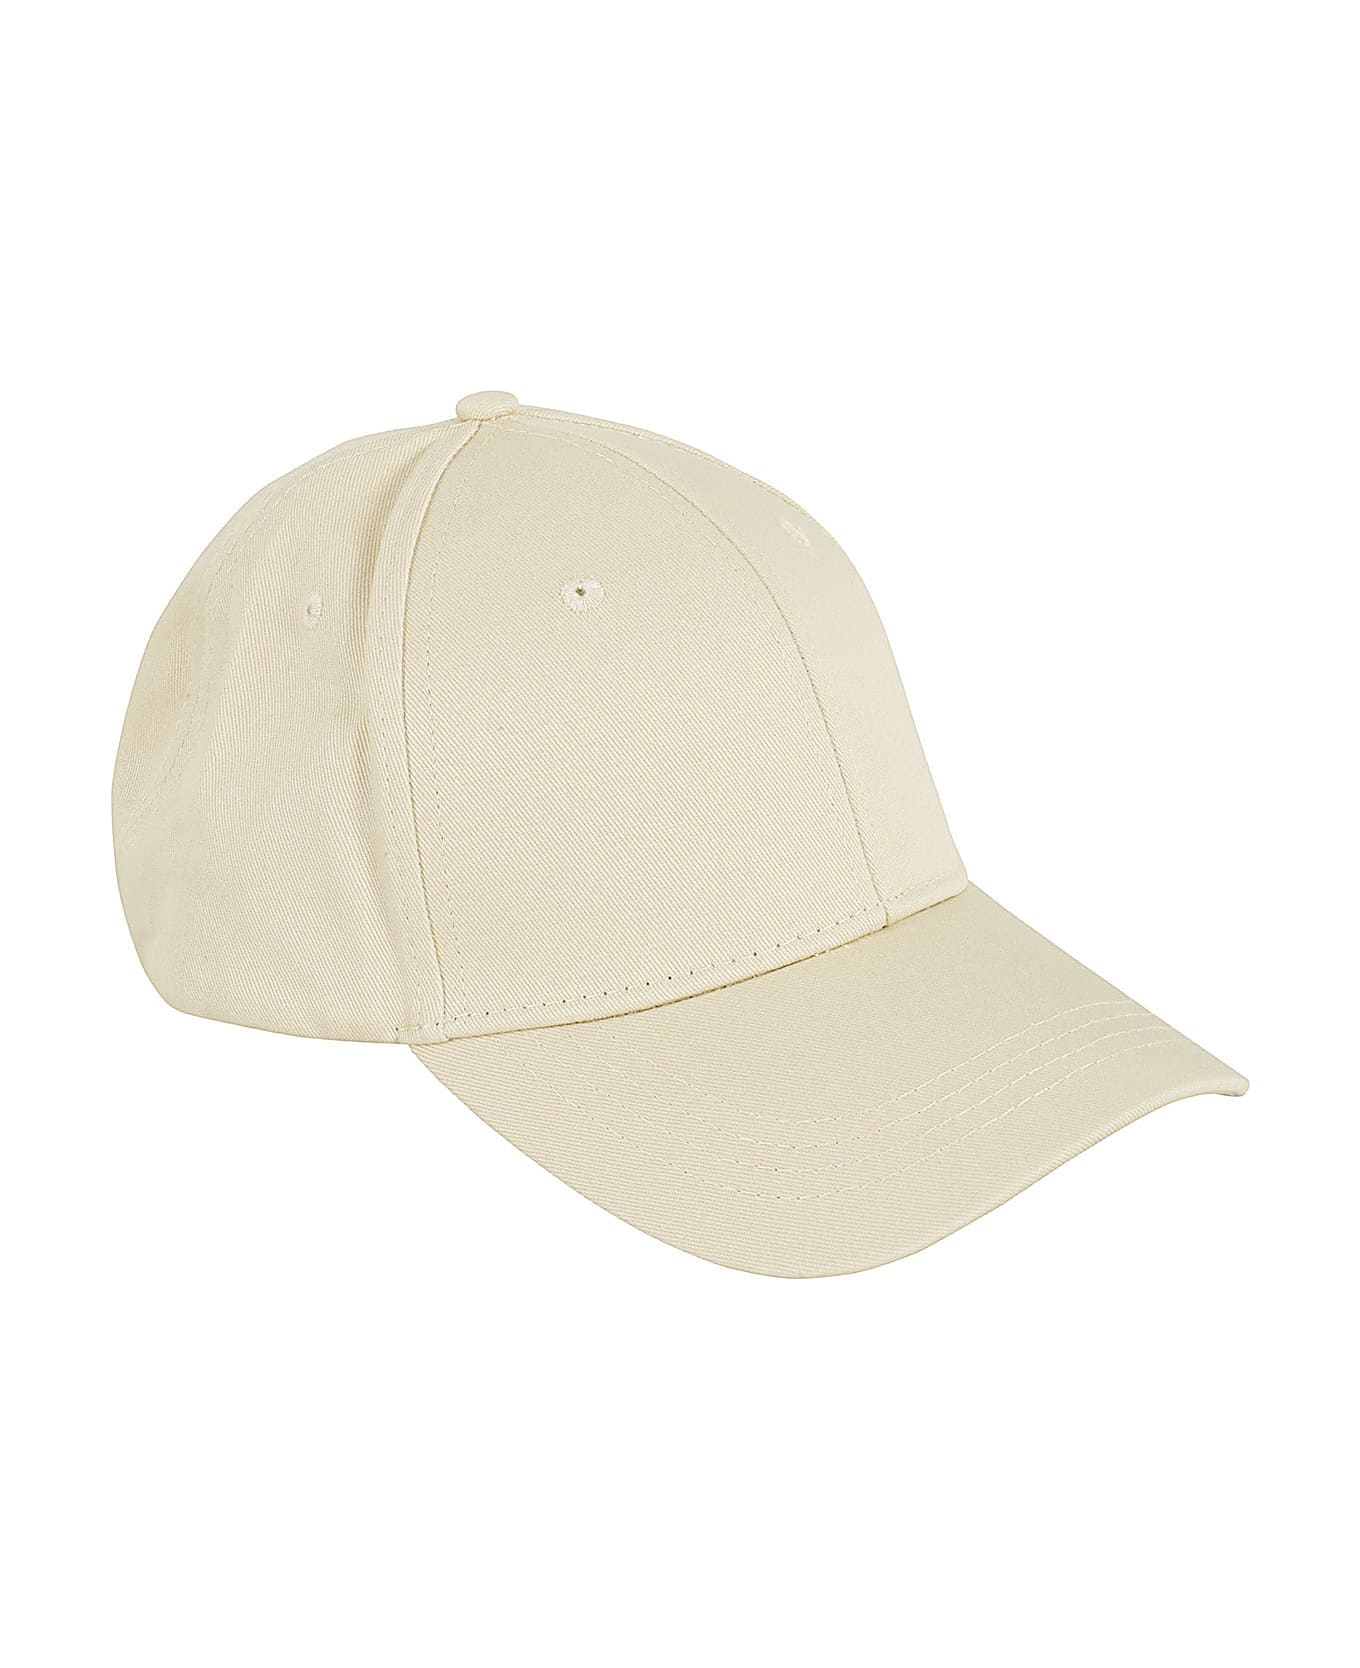 Aspesi Cappello Mod 2c01 - Coloniale 